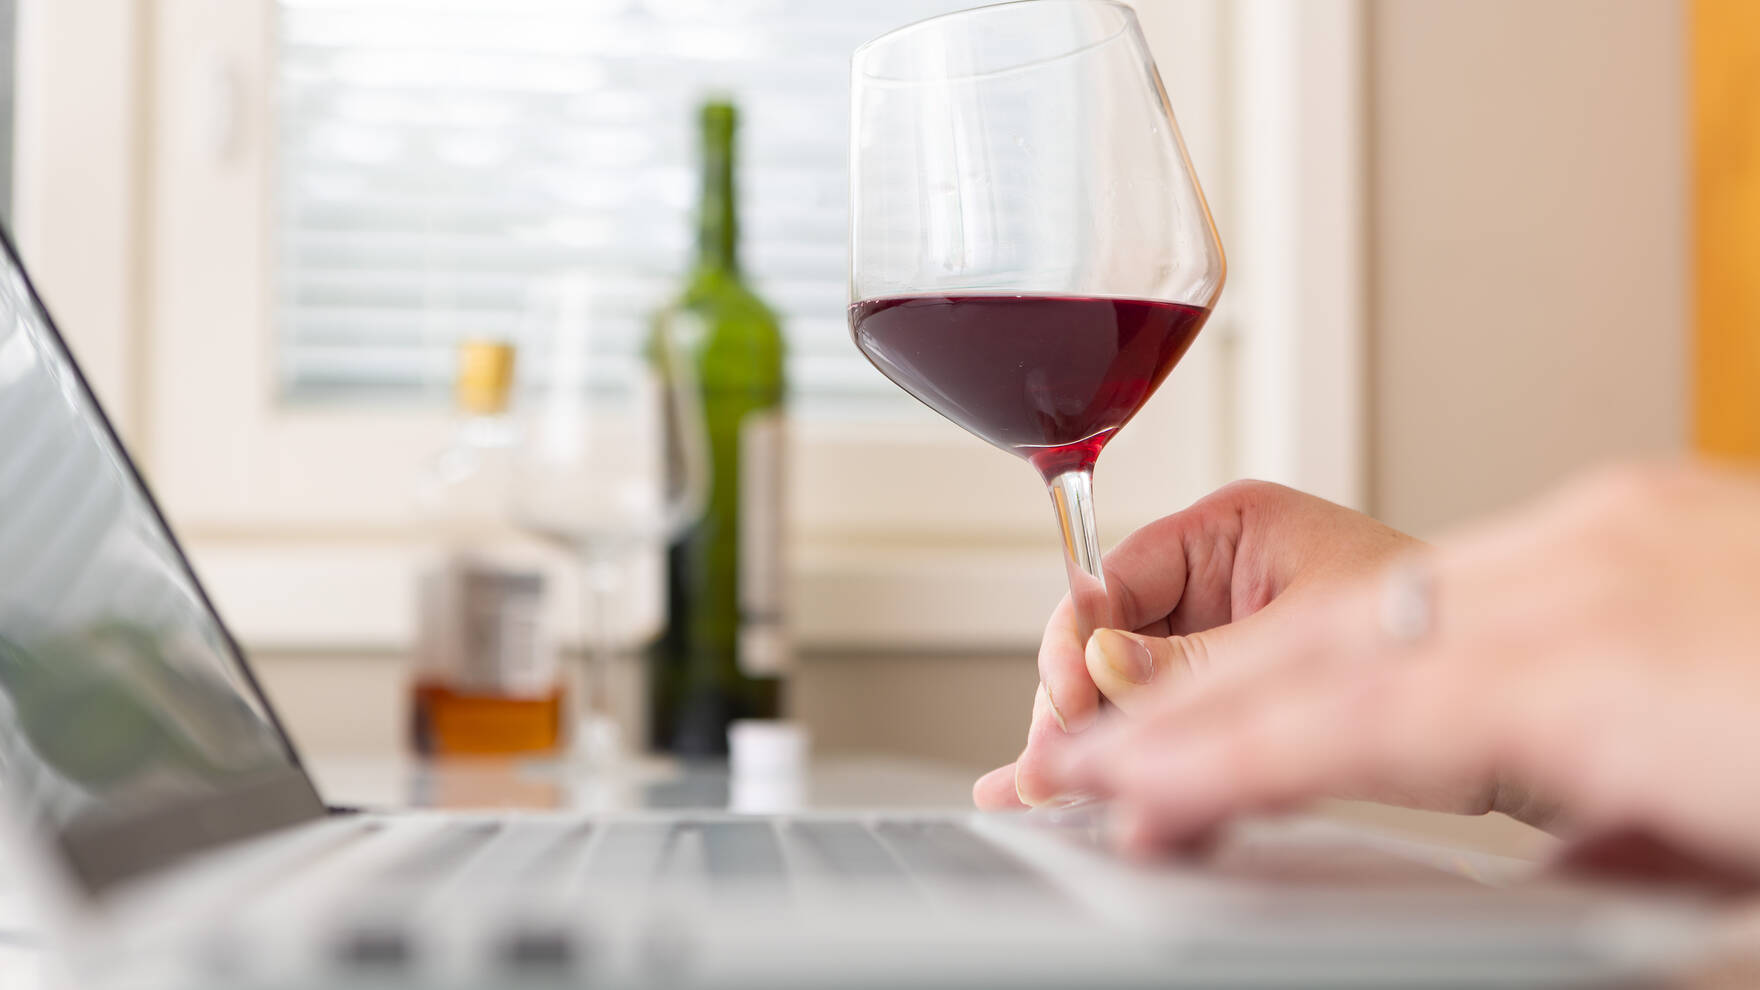 Henkilö istuu pöydässä läppärin ääressä viinilasi kädessä ja taustalla näkyy alkoholijuomapulloja ja toinen lasi.